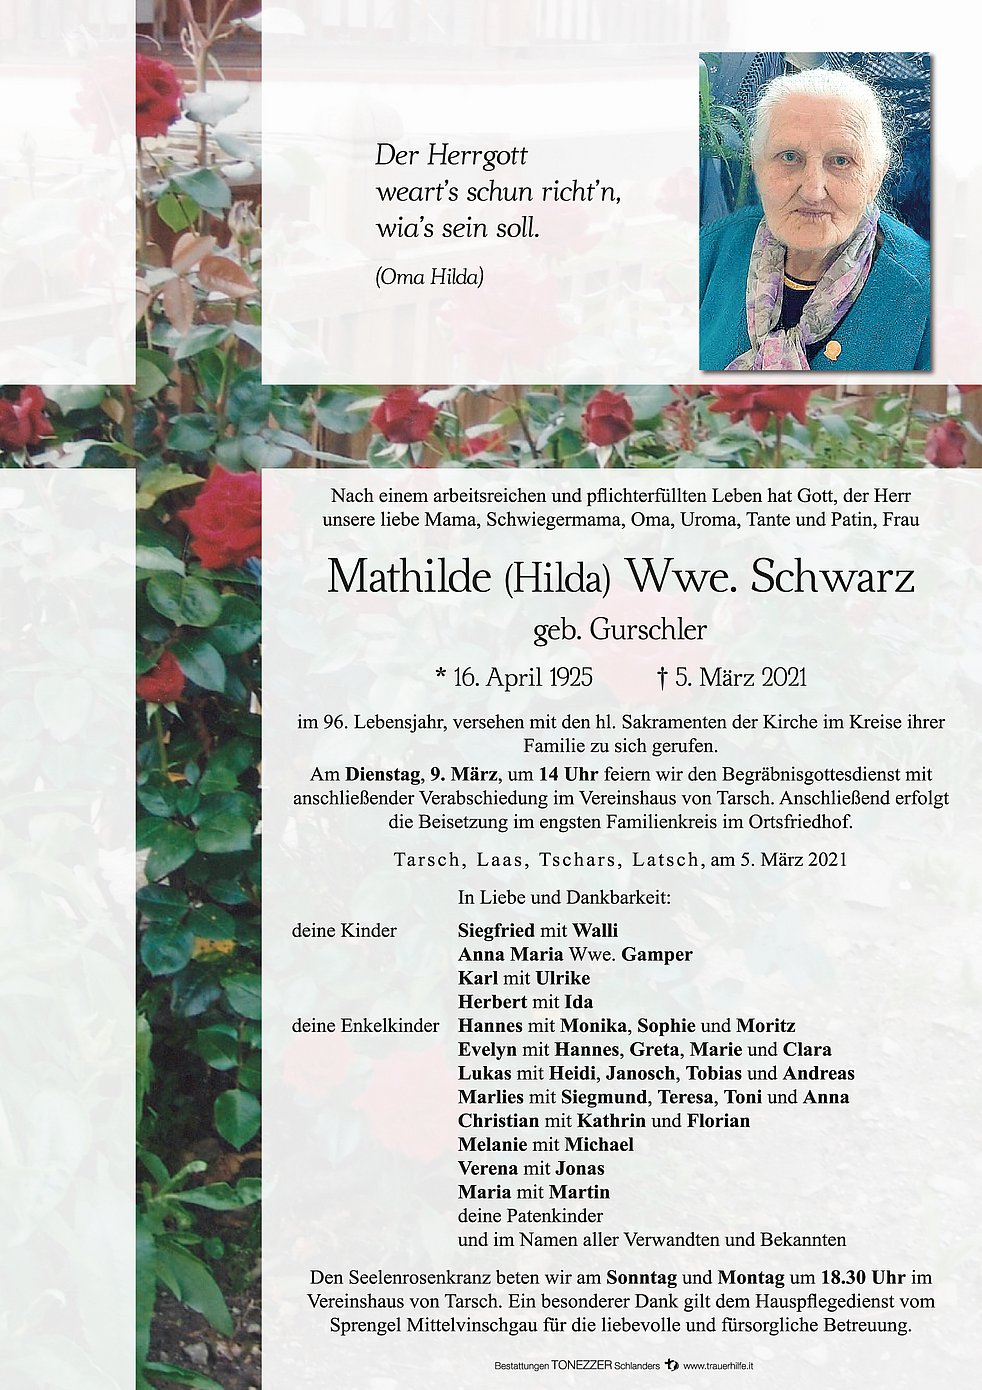 Mathilde (Hilda) Wwe. Schwarz aus Latsch - TrauerHilfe.it - das ...